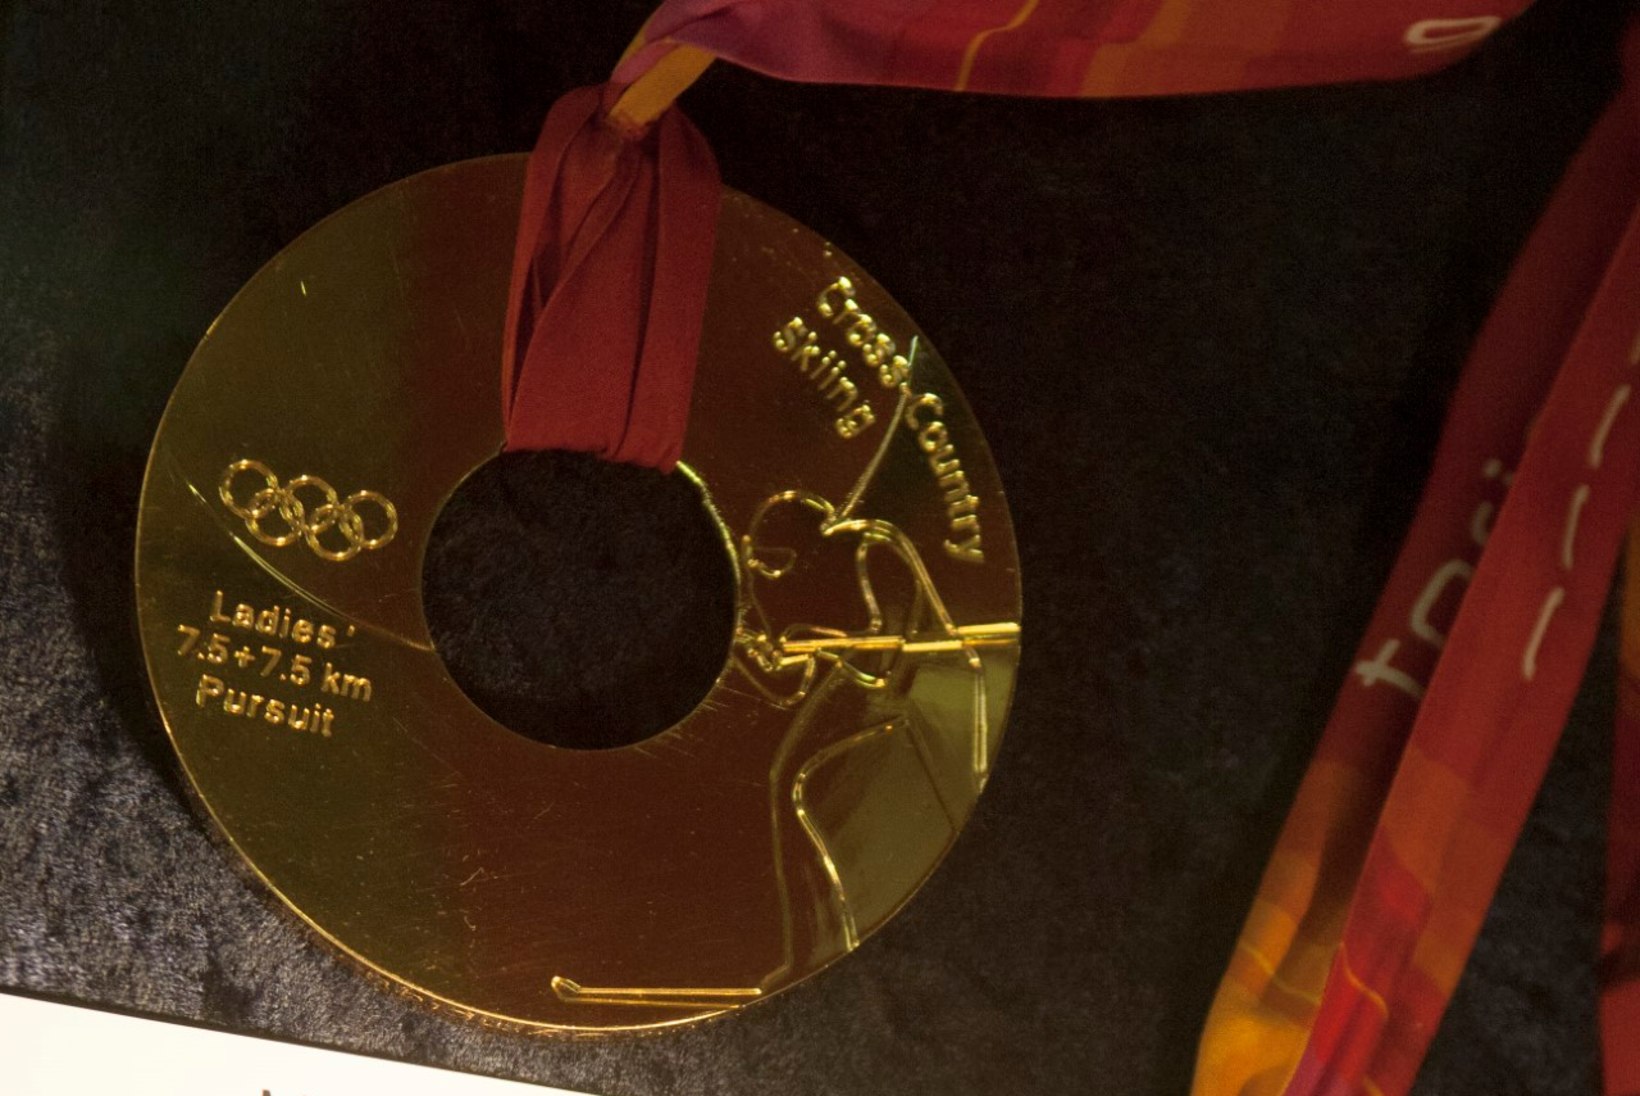 FOTOD: vaata Erika Salumäe kuulsat olümpiakulda ja teiste sangarite medaleid!